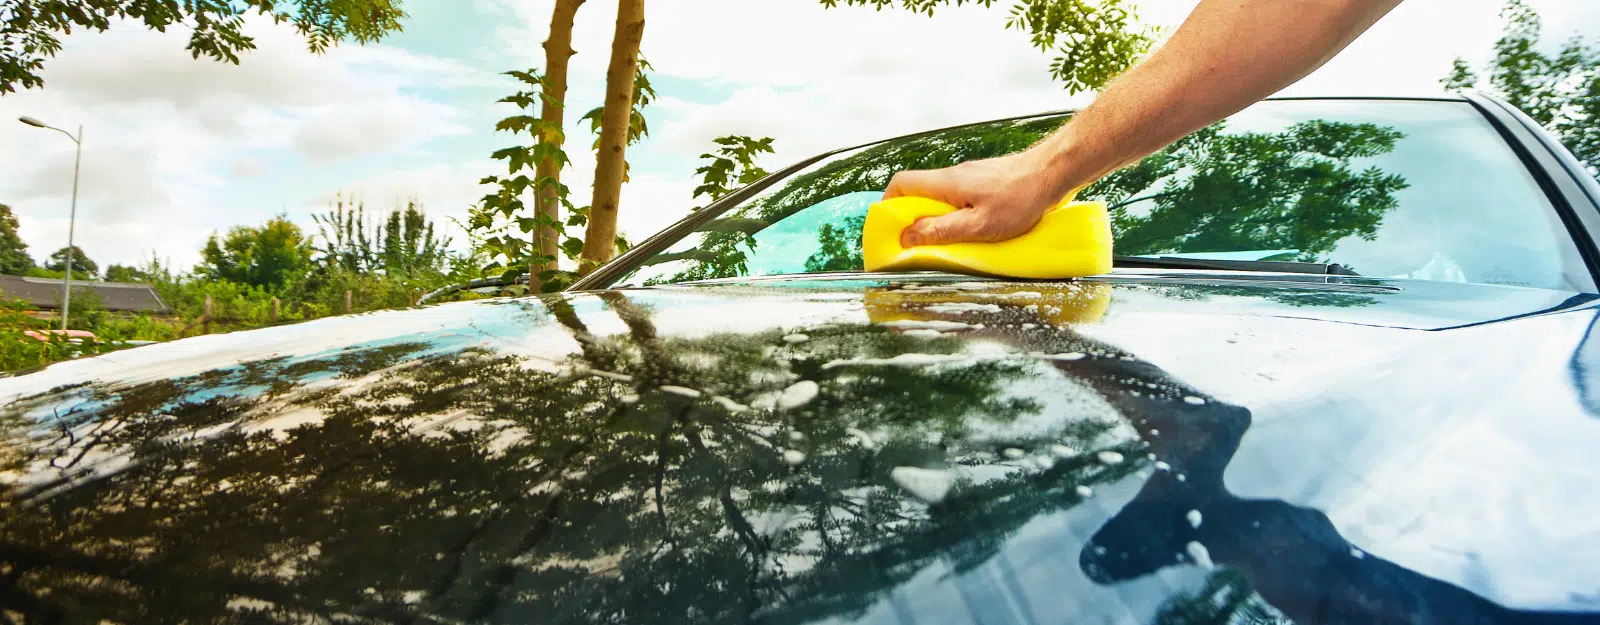 Comment laver sa voiture sans nuire à l’environnement.